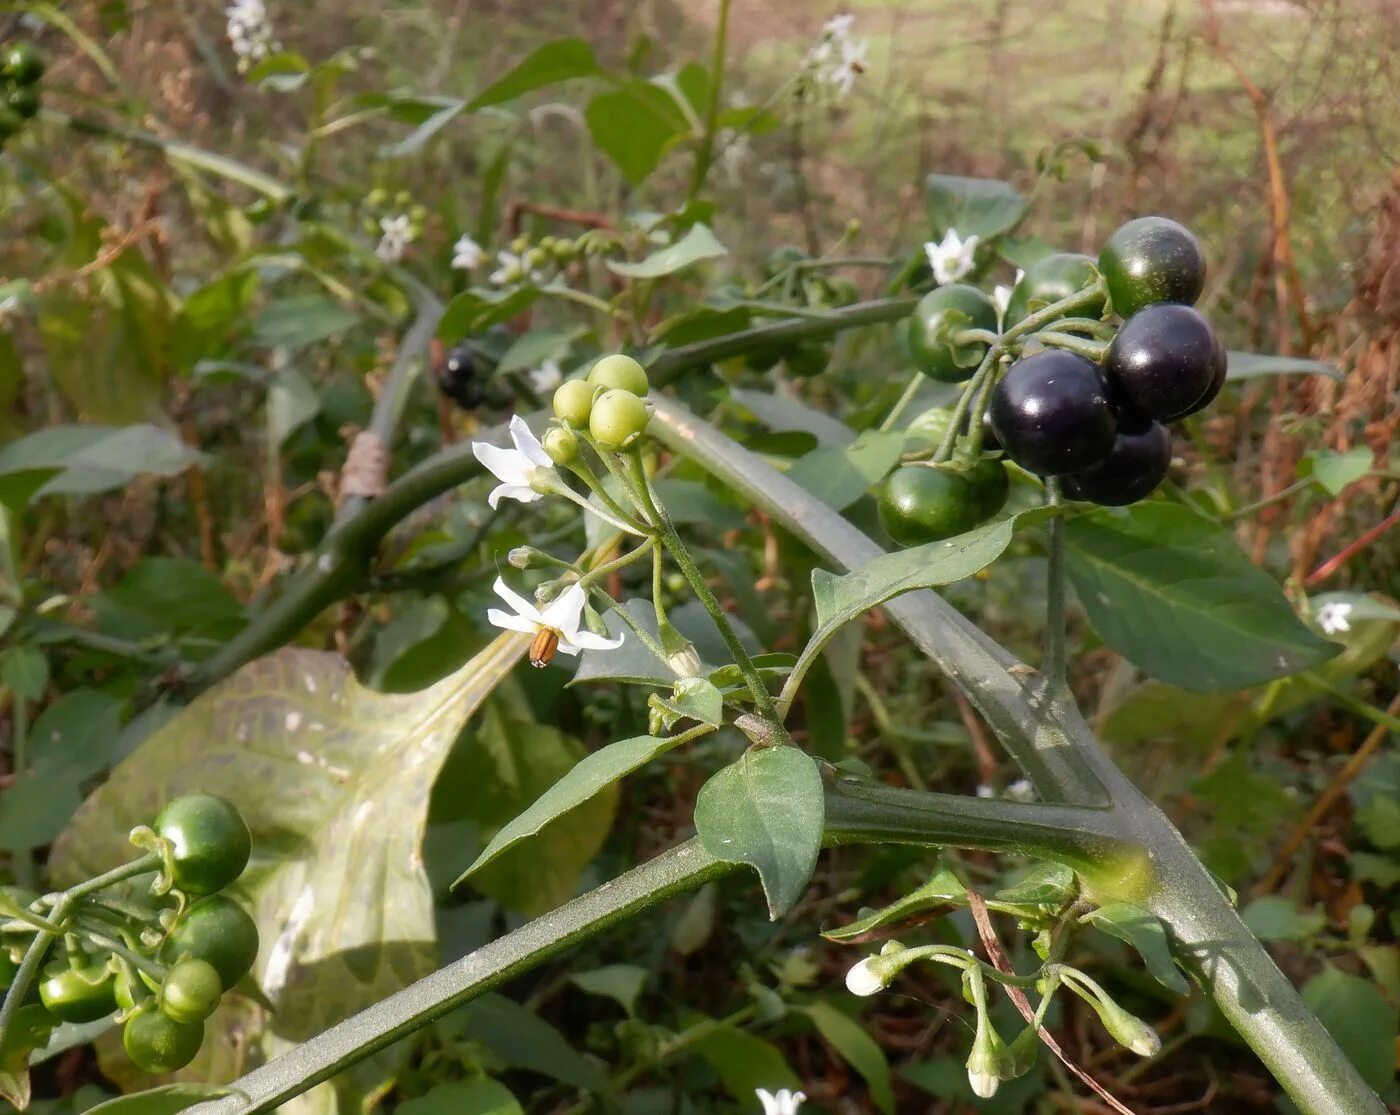 Паслен санберри. Семена санберри (Солнечная ягода) / паслен садовый / Solanum retroflexum. Санберри ягода. Паслен черный санберри.